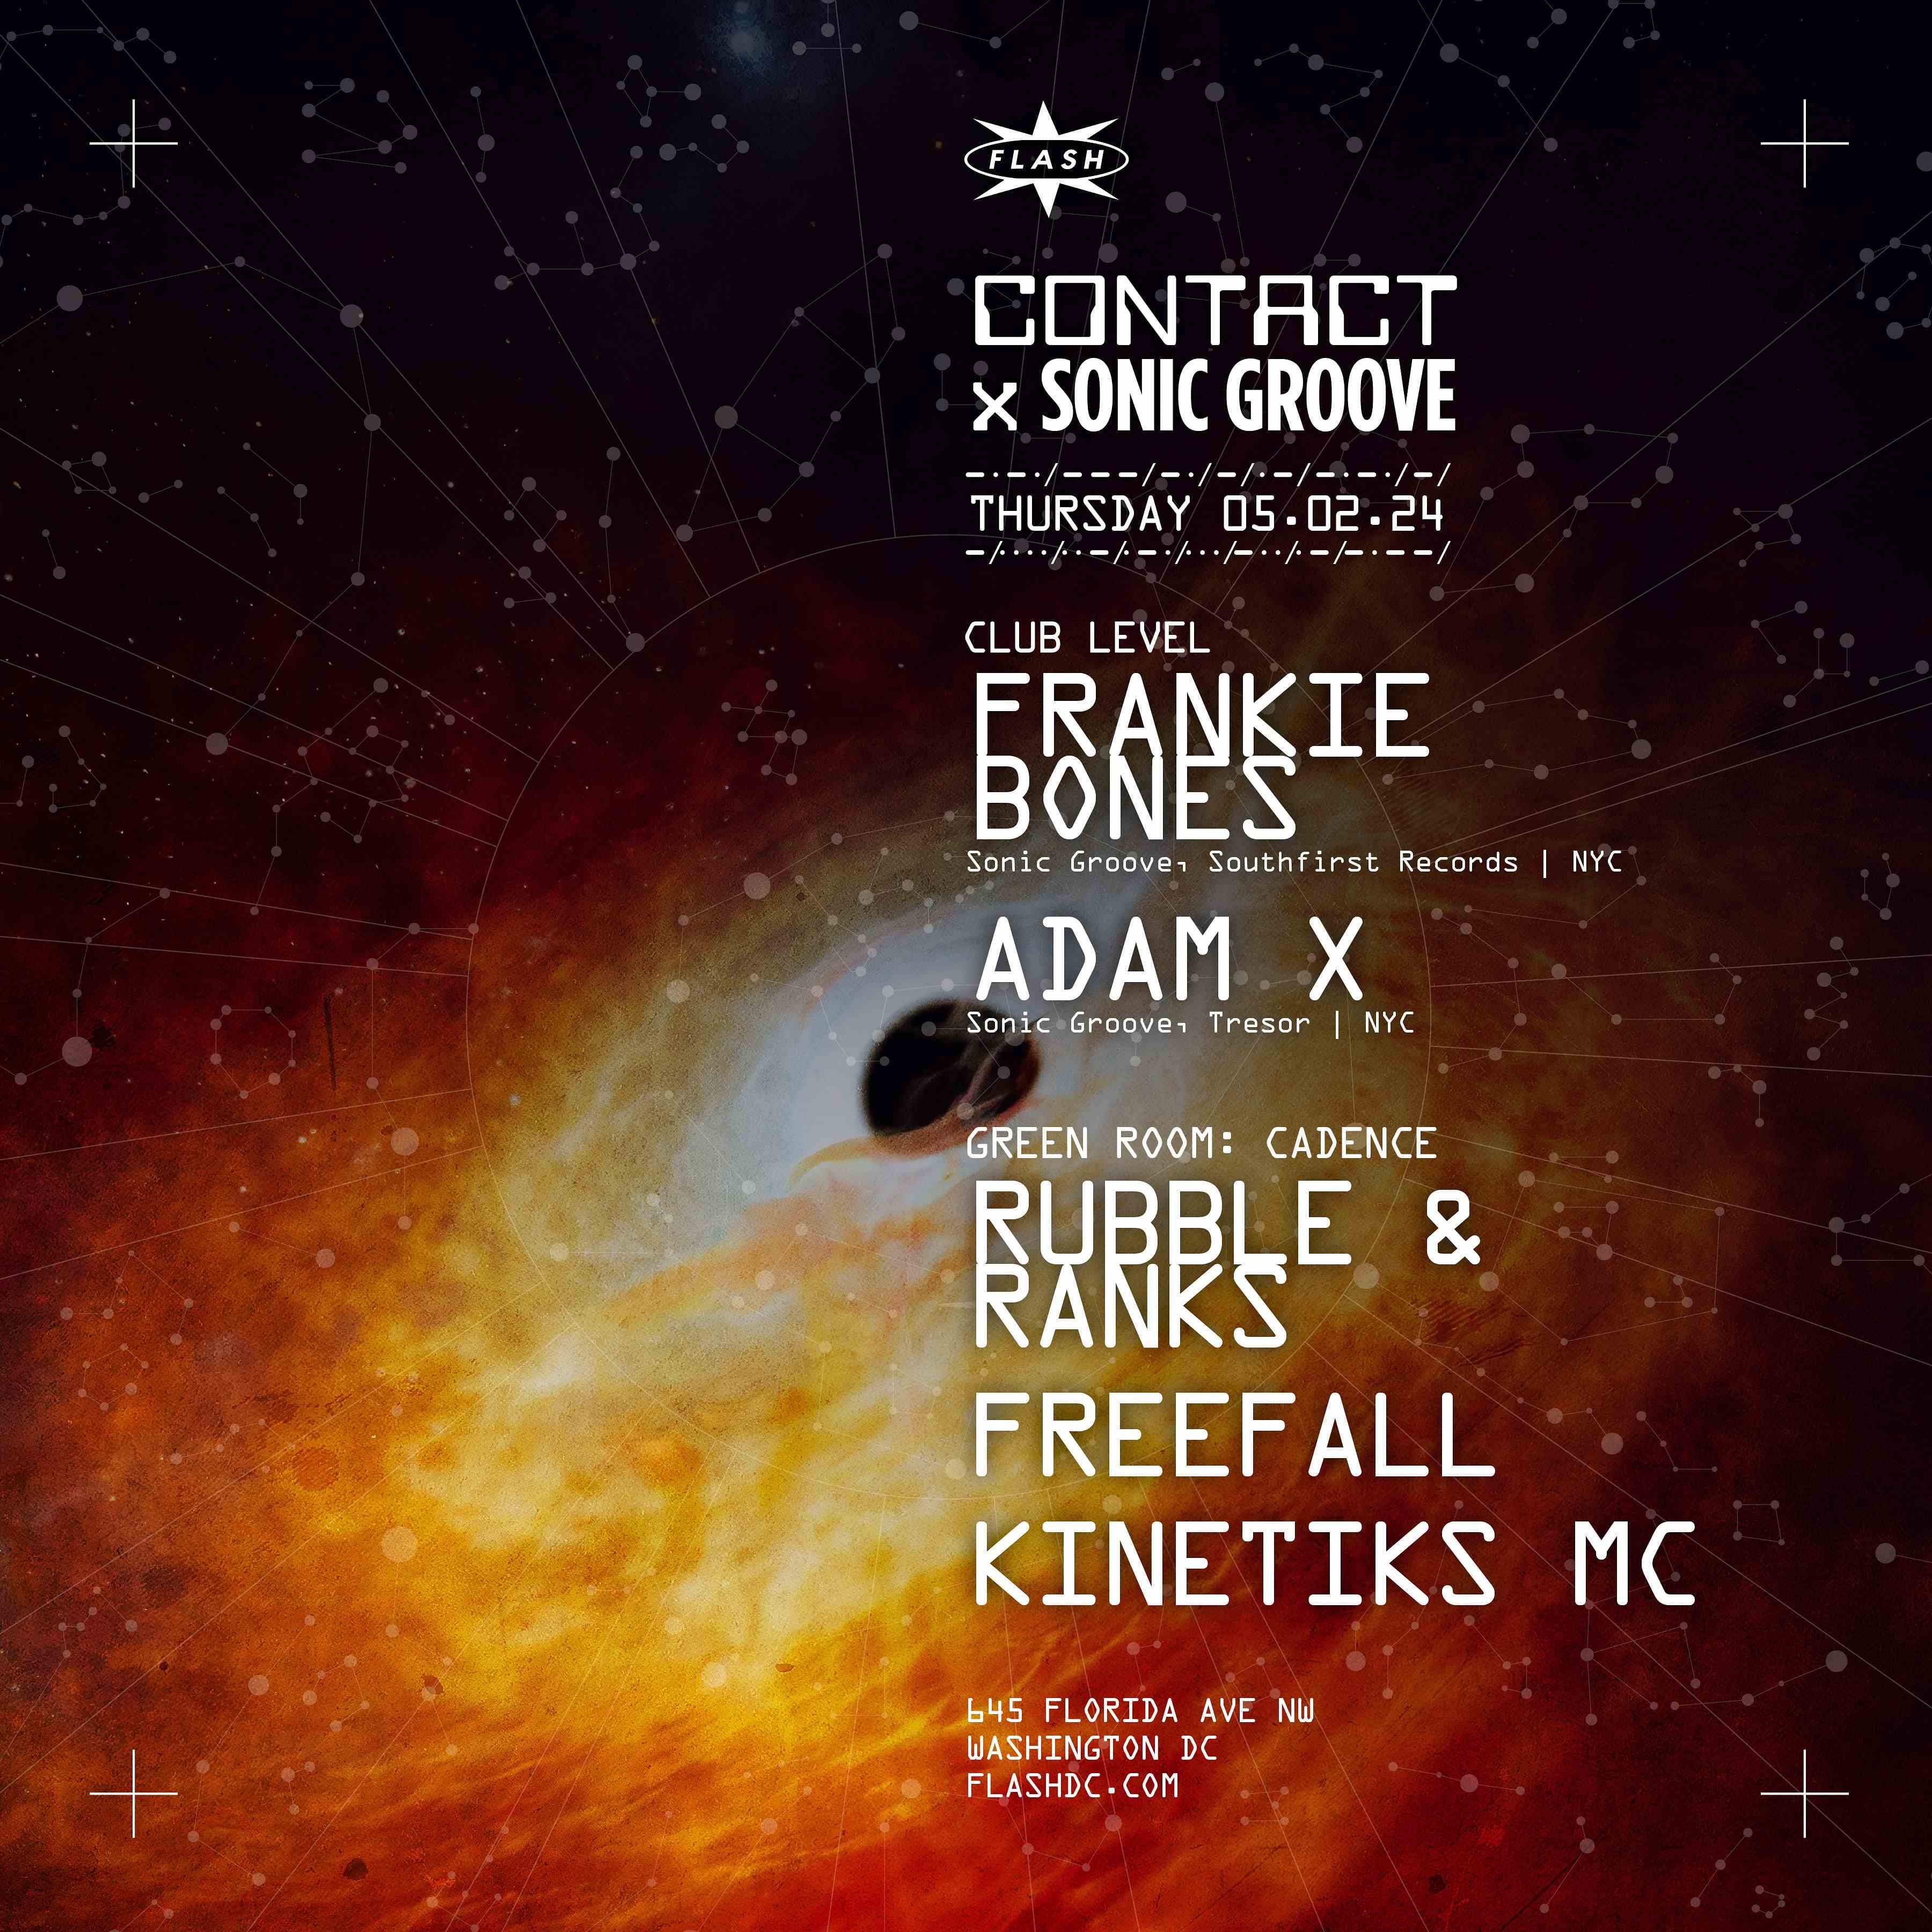 CONTACT x Sonic Groove: Frankie Bones - Adam X event flyer